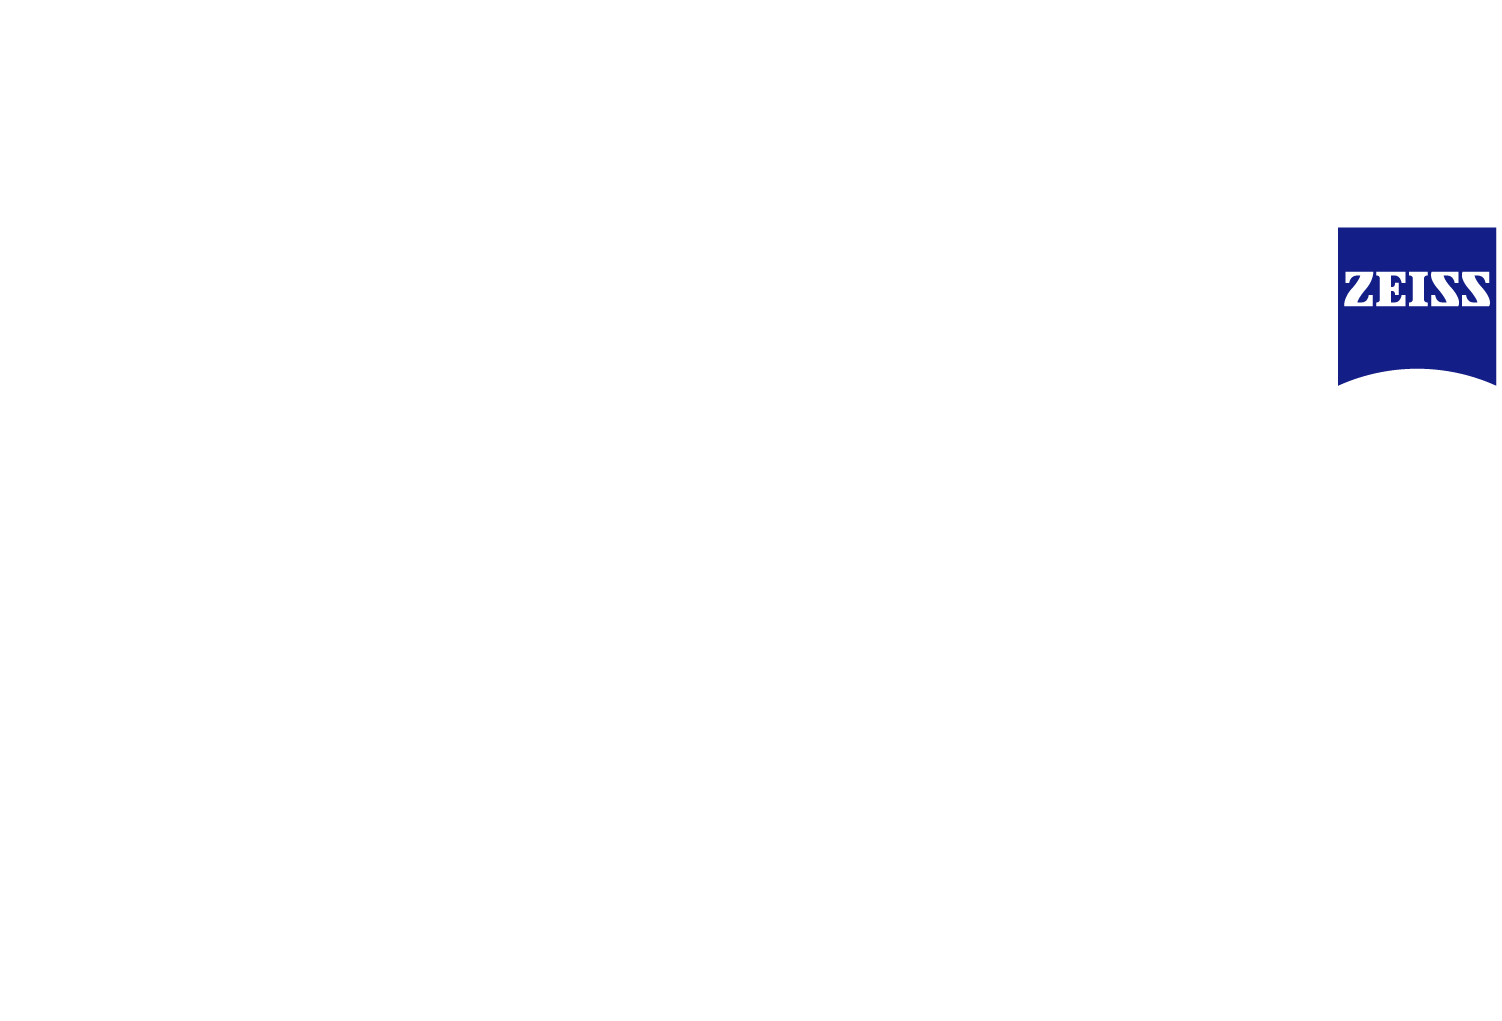 大陸版 Vivo X60 Pro+ オレンジ 12/256